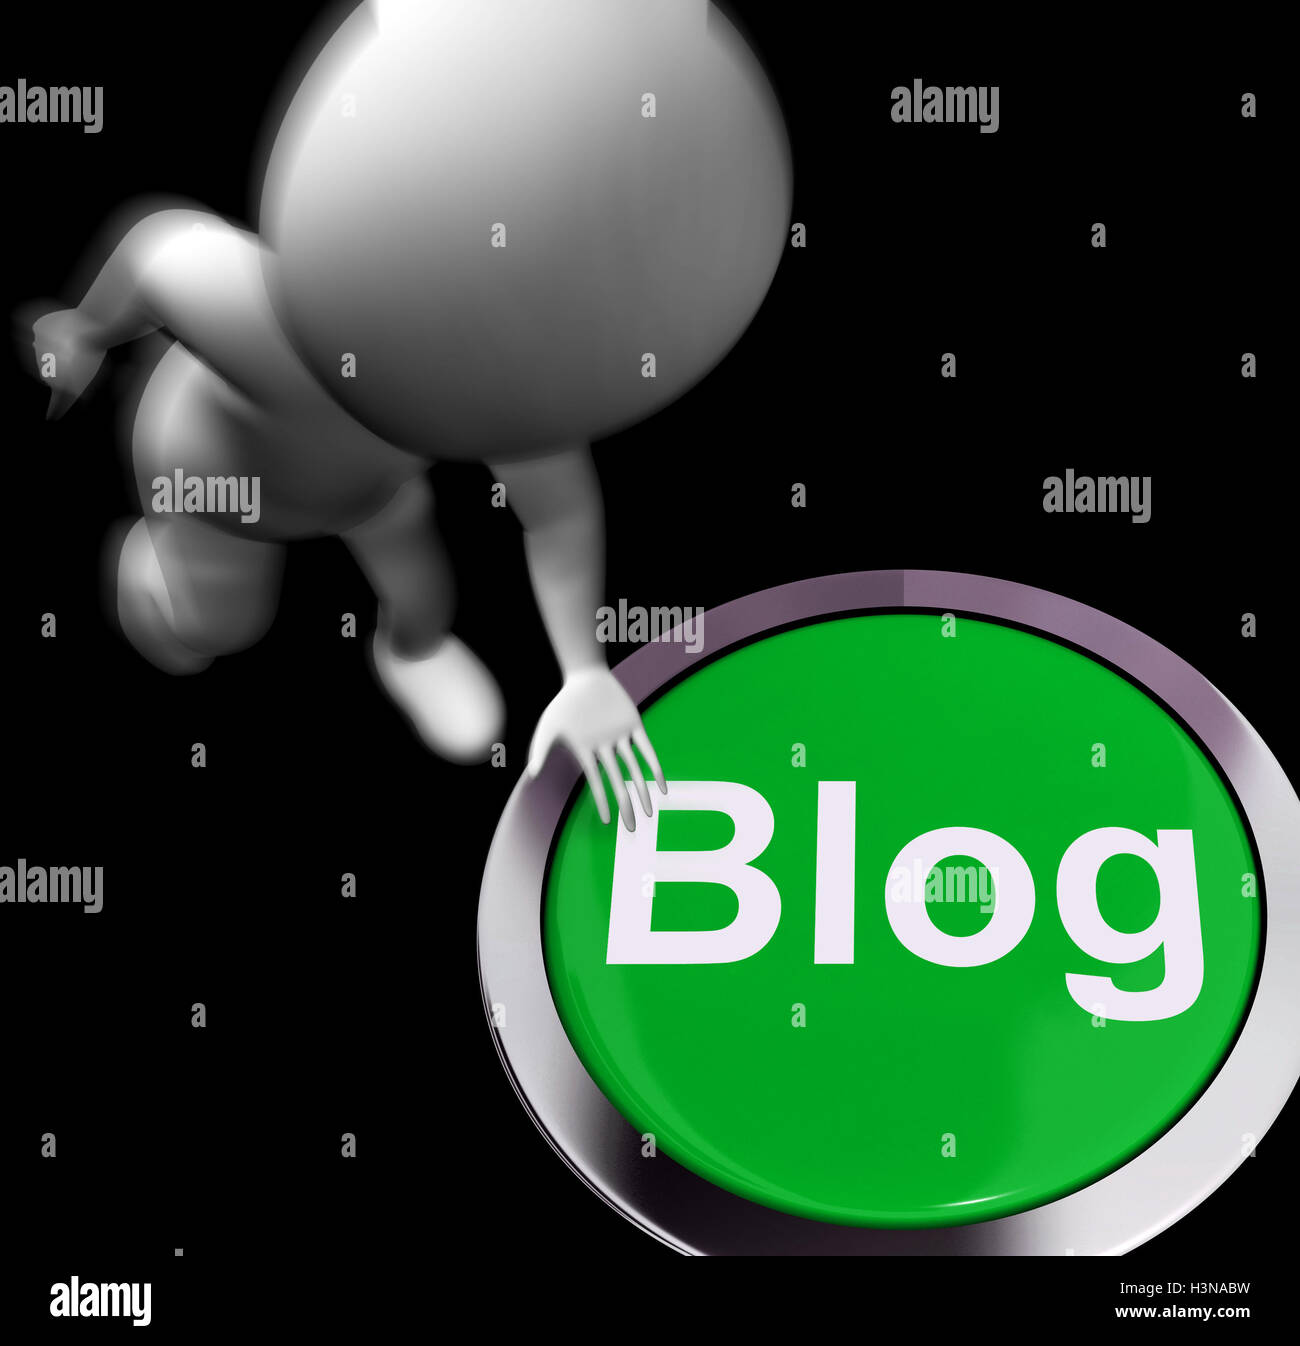 Blog enfoncé signifie des informations ou exprimer des idées en ligne Banque D'Images